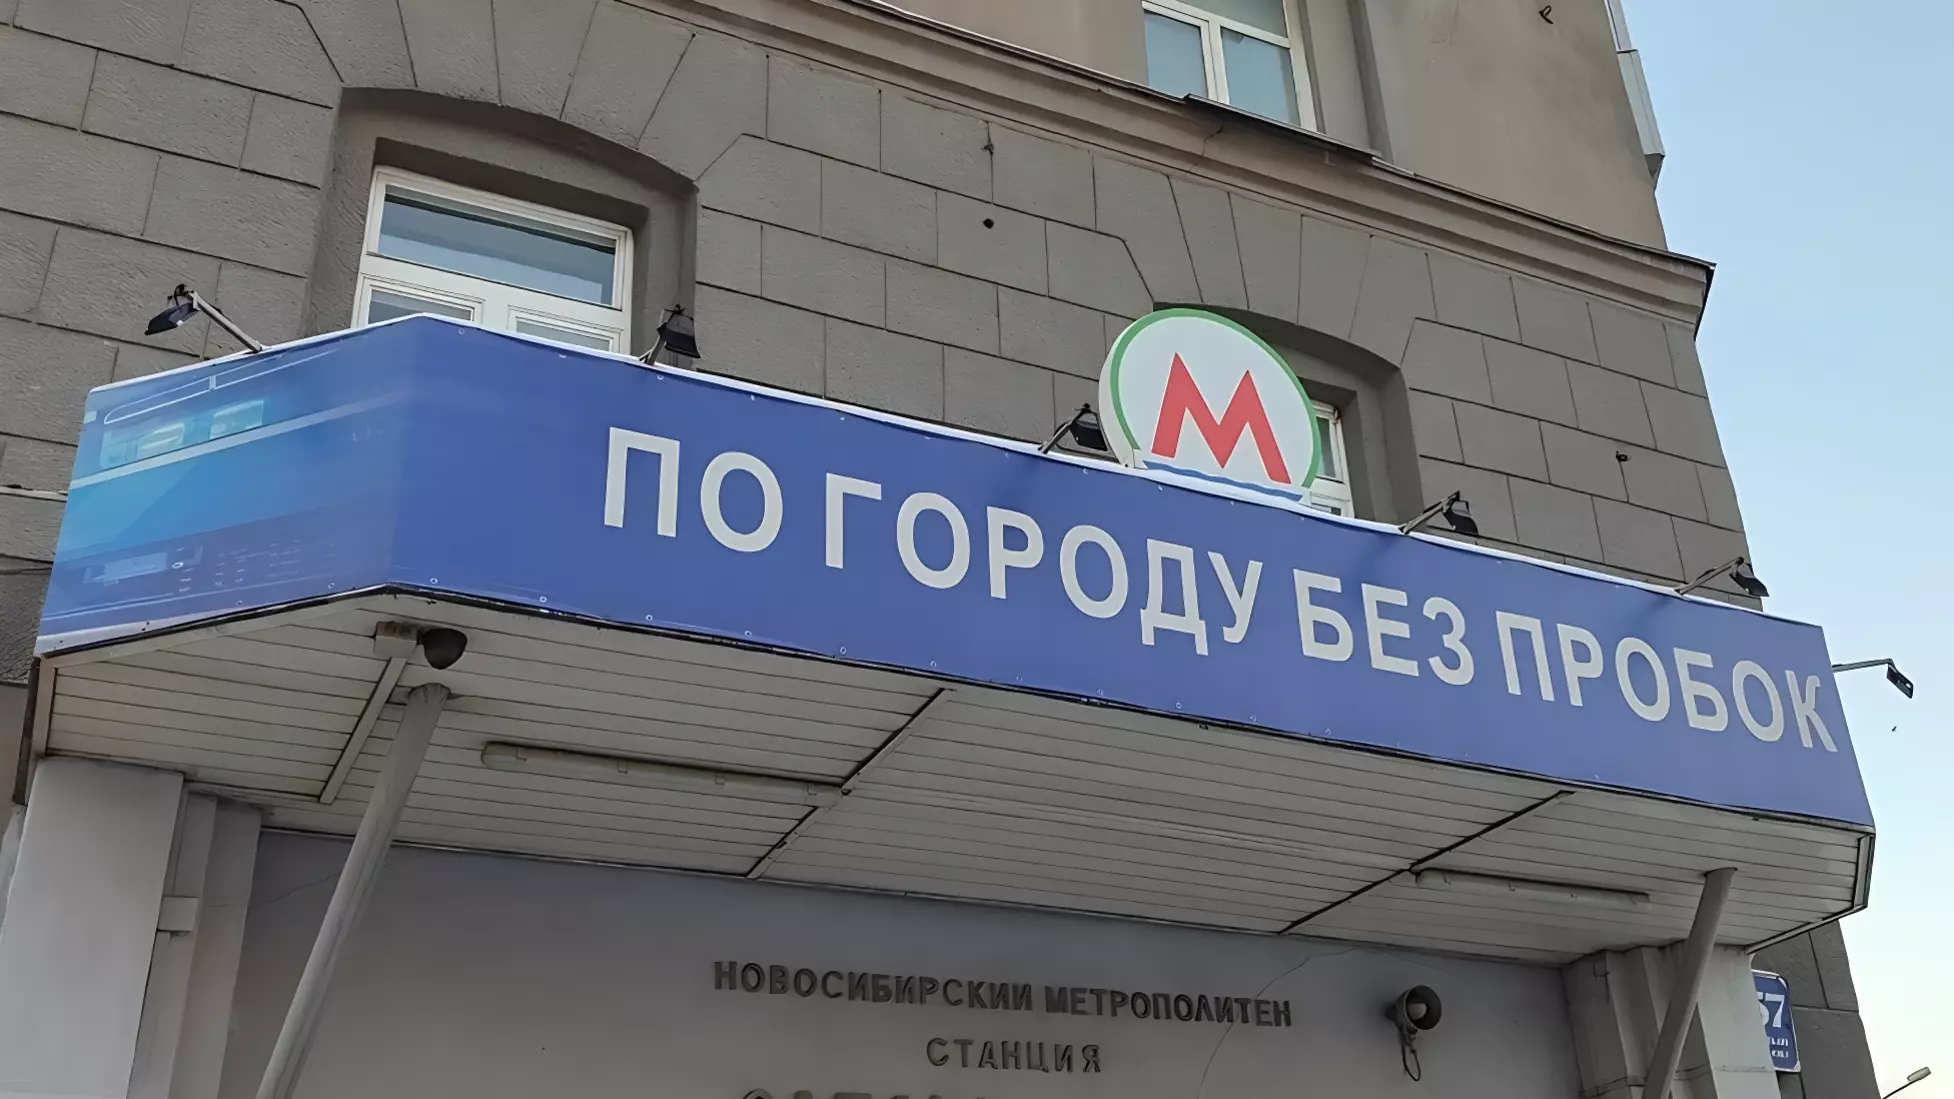 Метро в Новосибирске — самый быстрый и комфортный городской транспорт